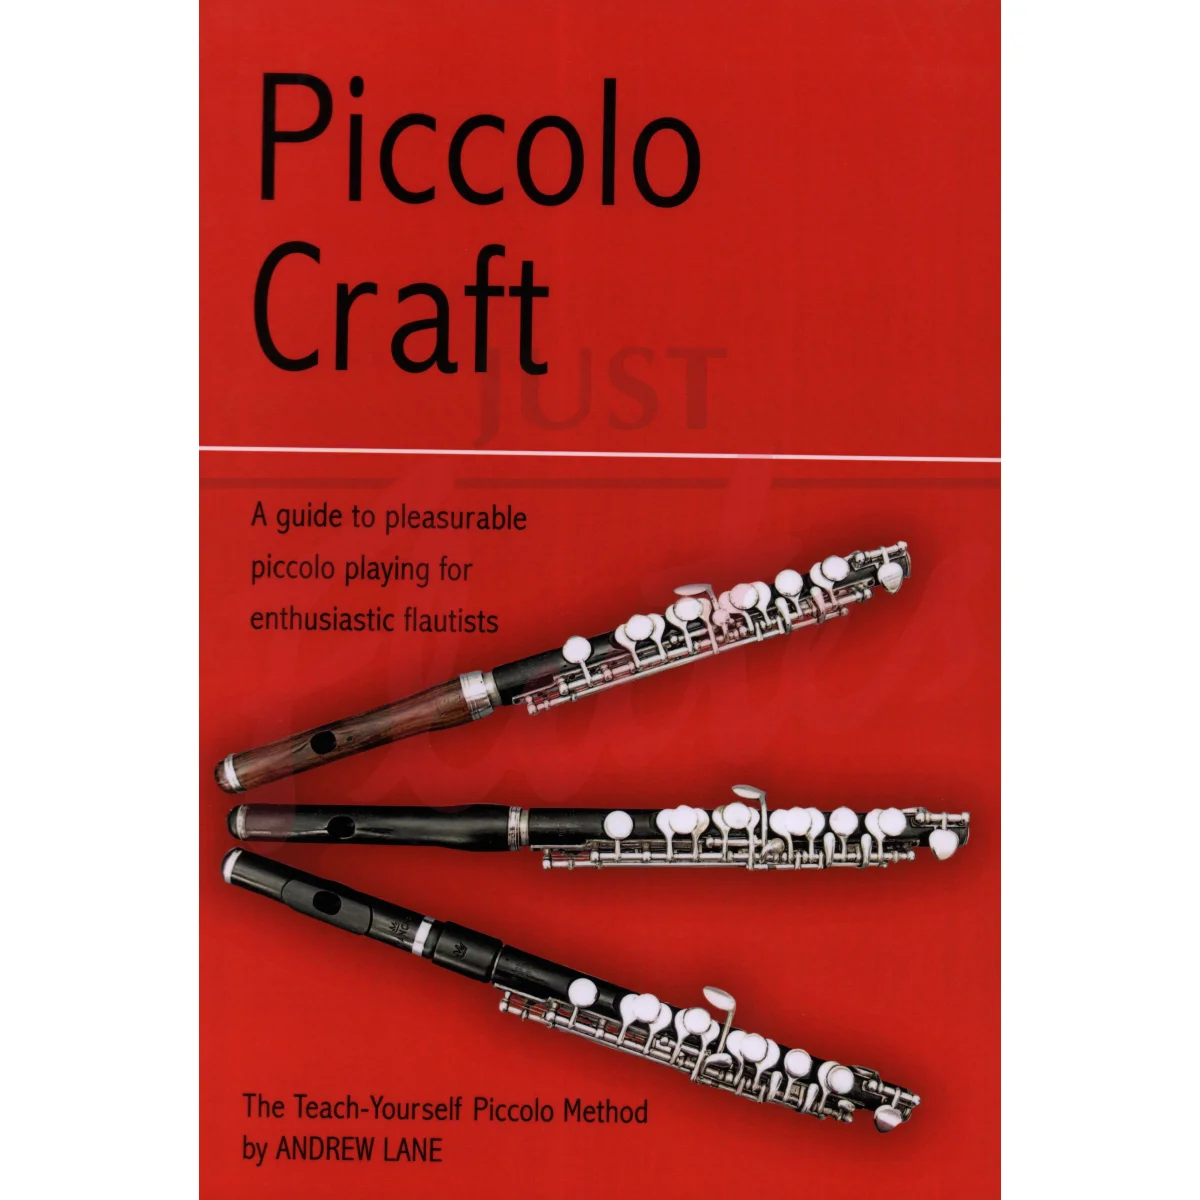 Piccolo Craft